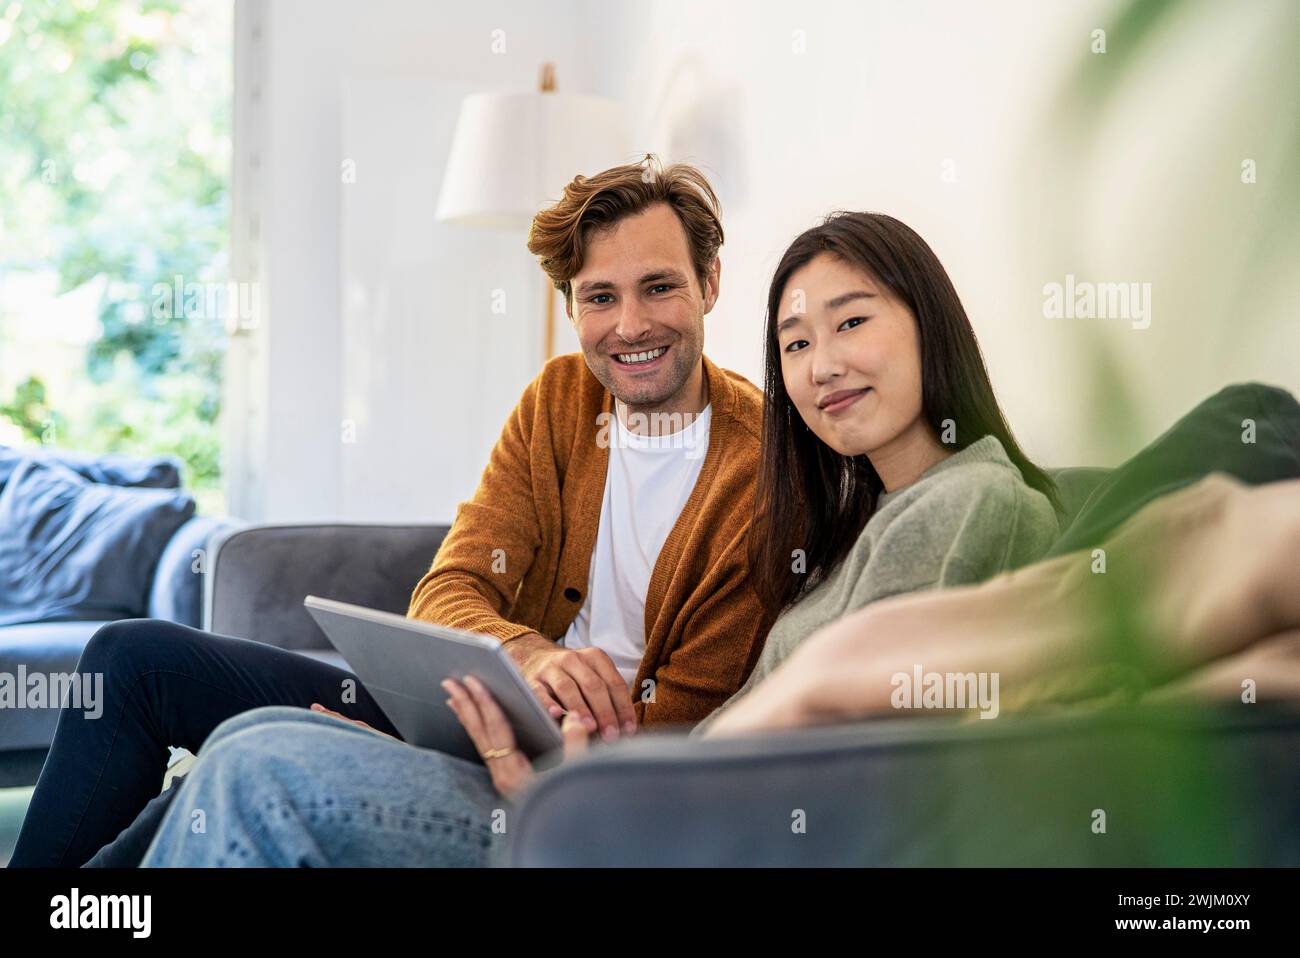 Erwachsenes Paar, das mit einem digitalen Tablet auf dem Sofa sitzt und auf die Kamera blickt Stockfoto